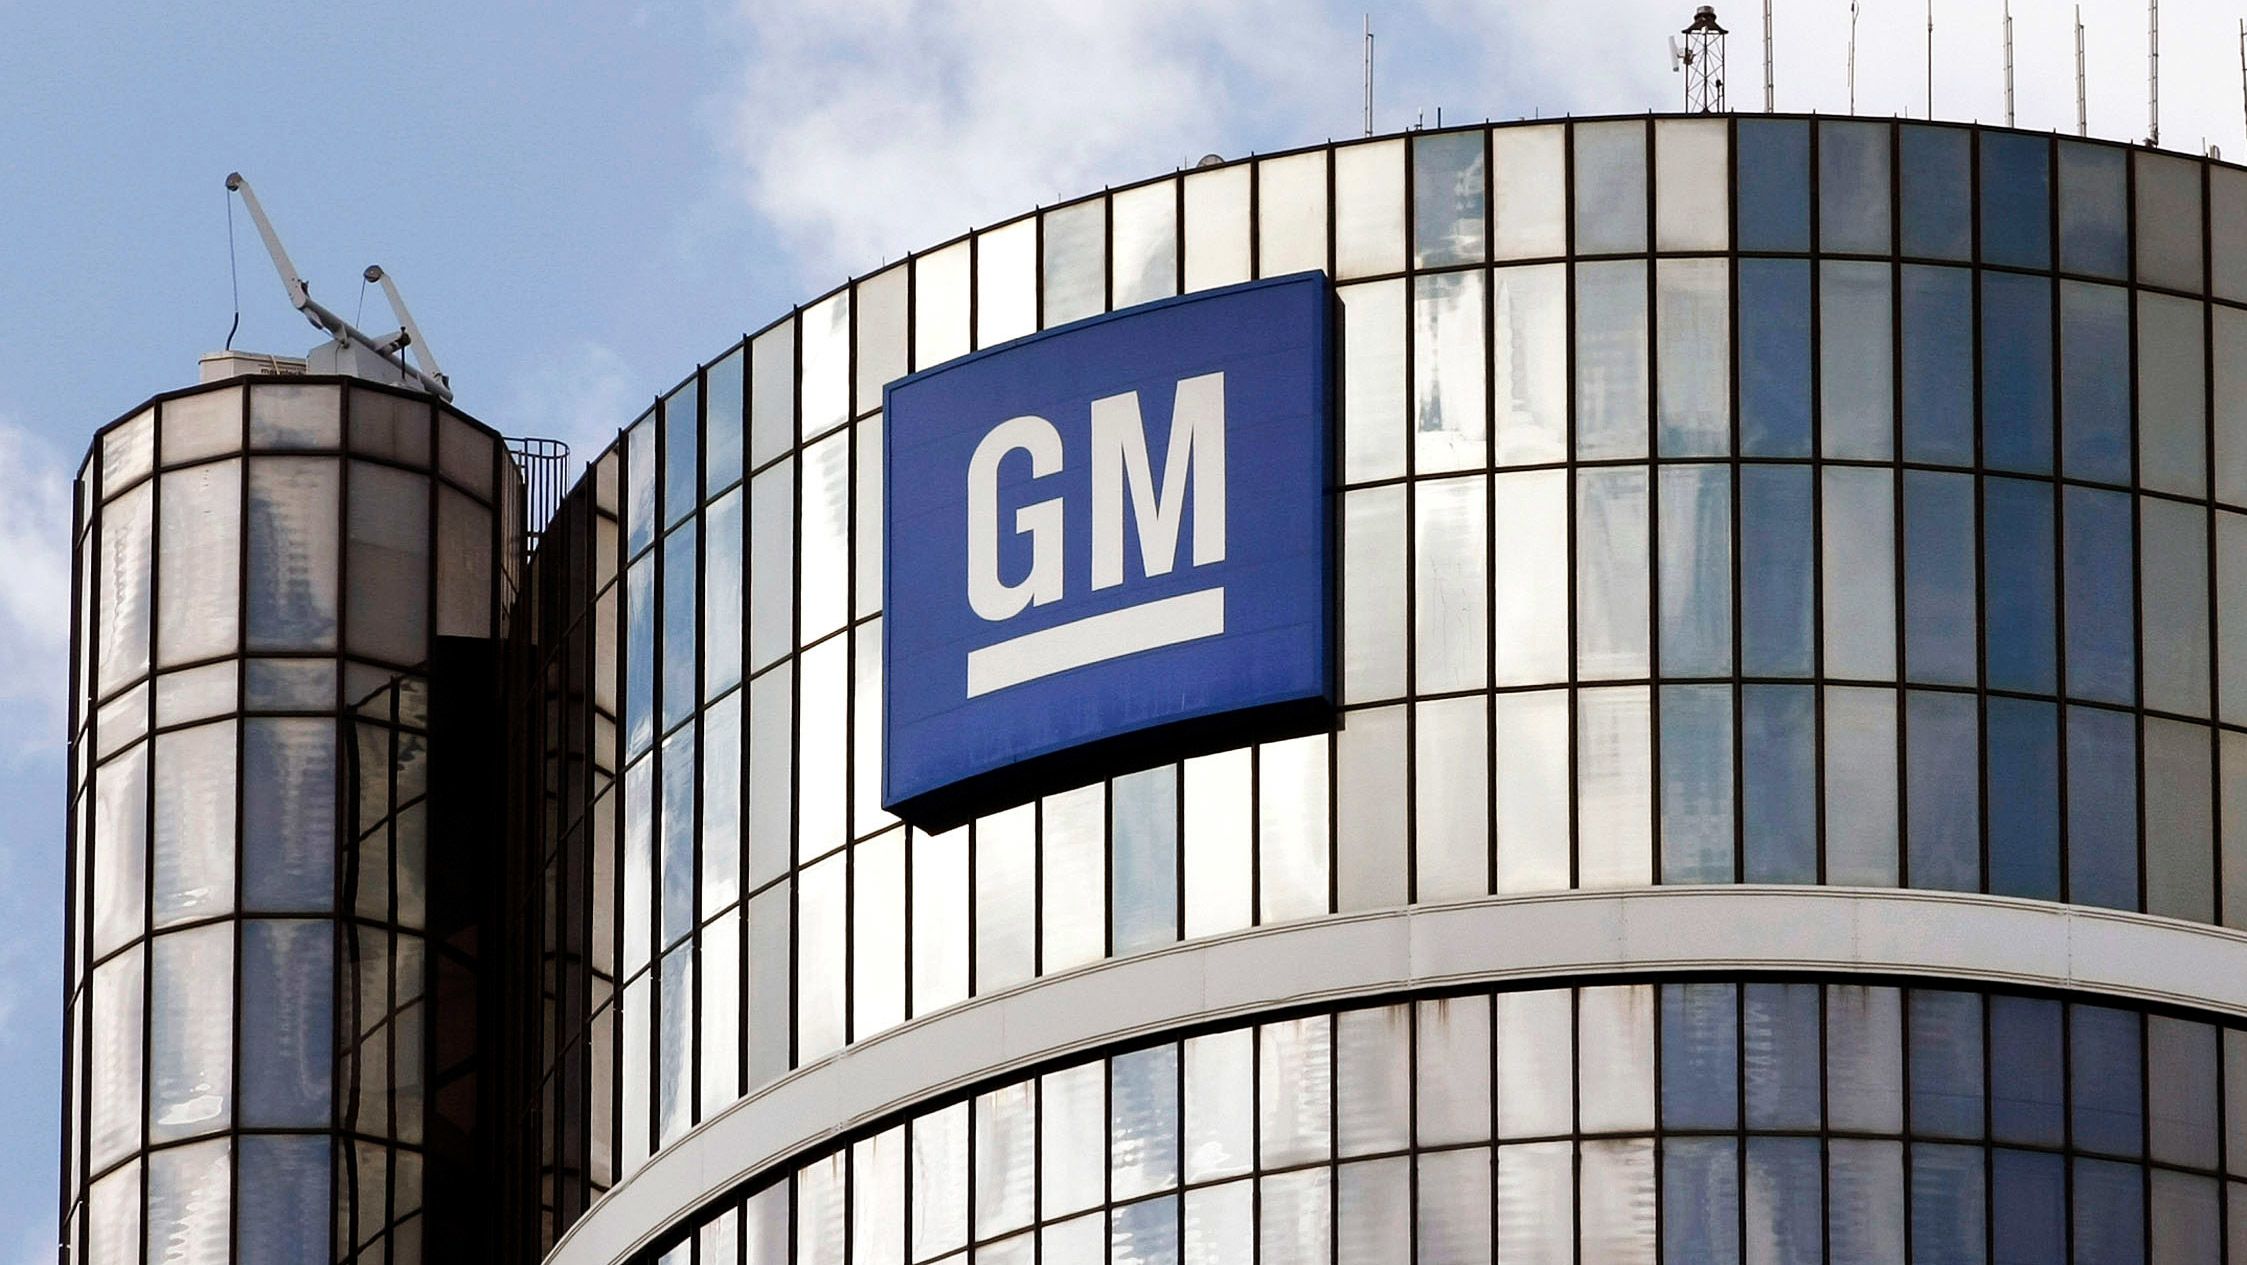 General Motors собирается выпустить автомобиль с невероятными характеристиками